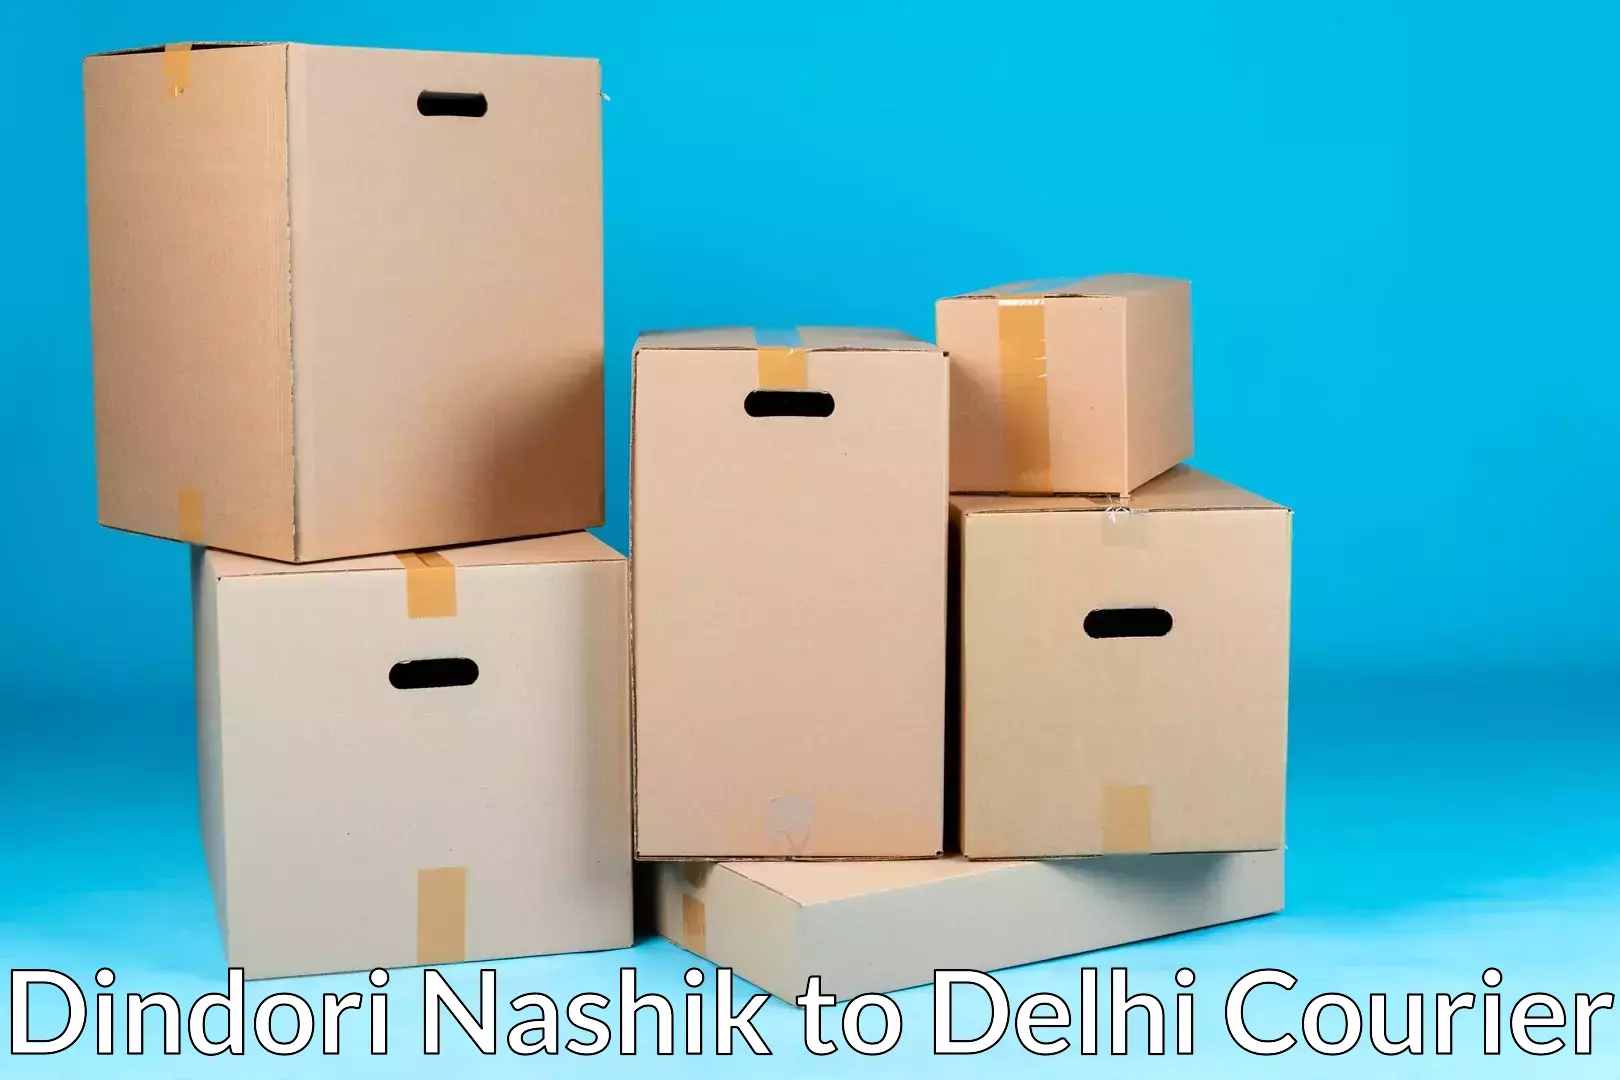 Trusted moving company in Dindori Nashik to Subhash Nagar